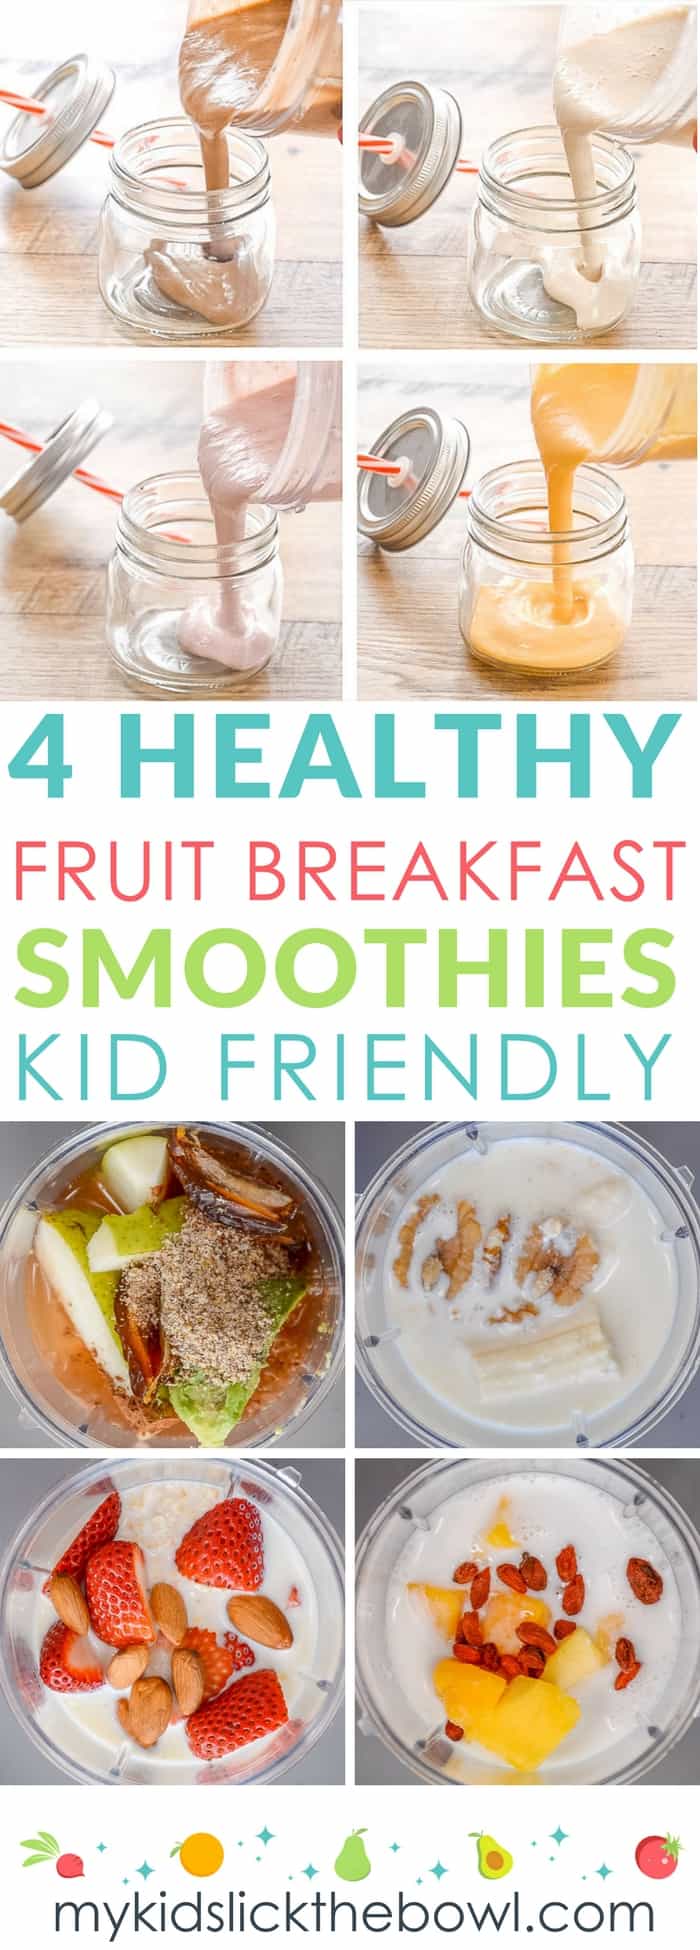 https://mykidslickthebowl.com/wp-content/uploads/2017/09/healthy-fruit-breakfast-smoothies-4.jpg